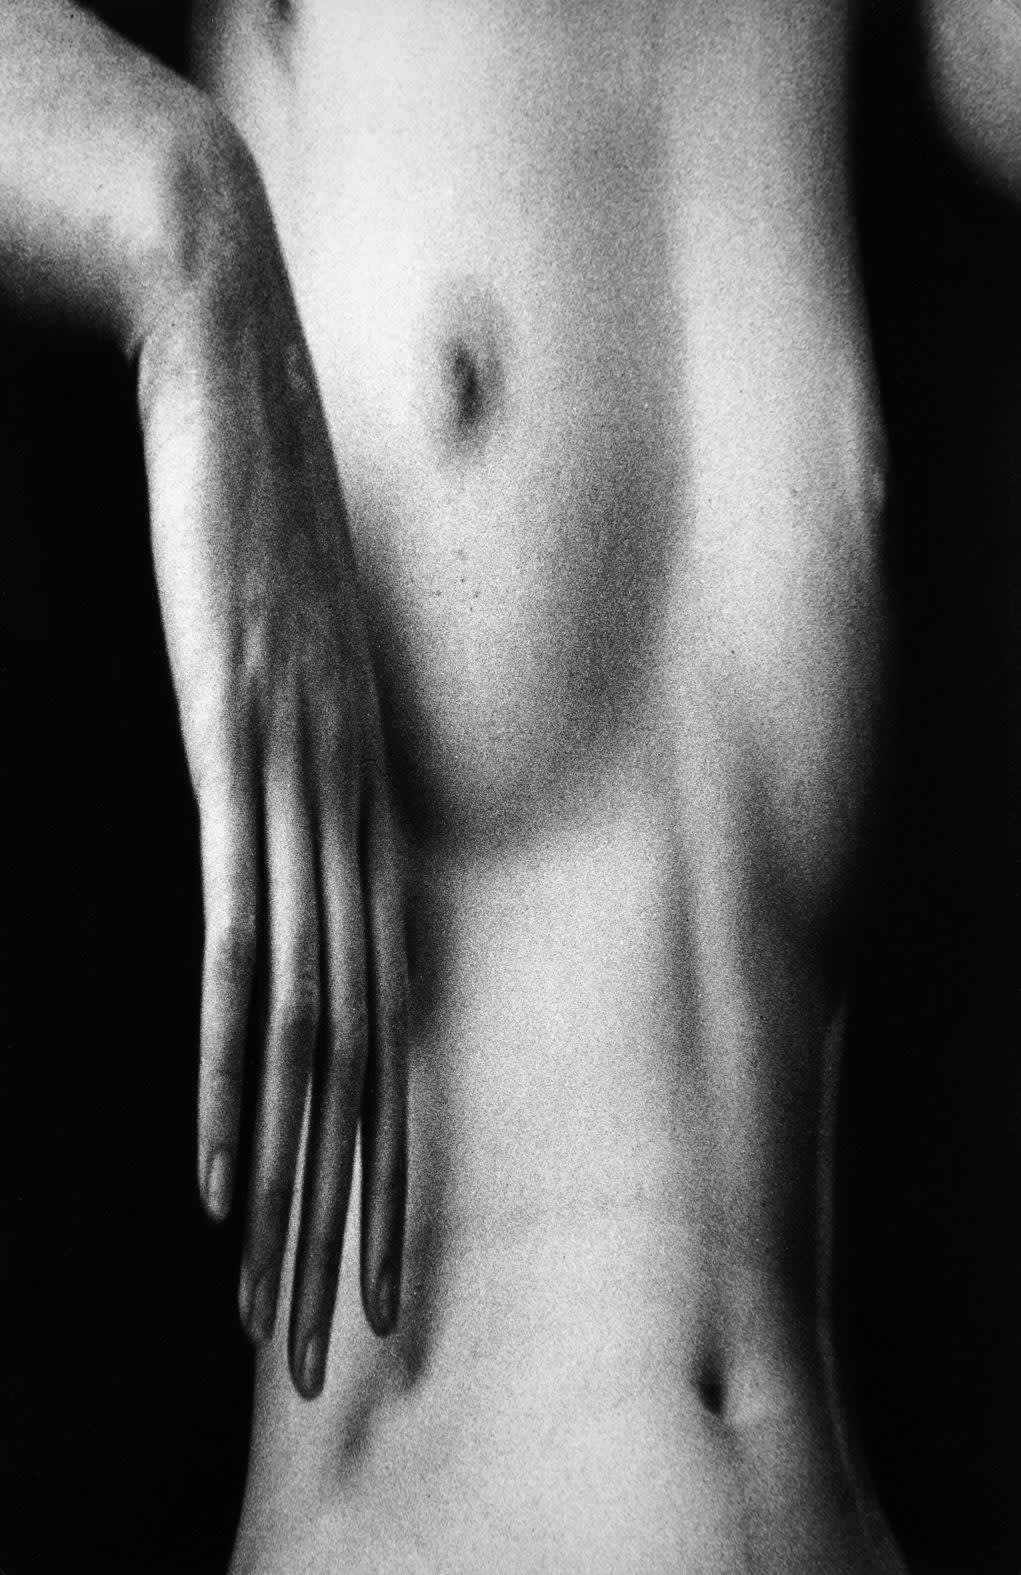 amateur nudist sex pics nude gallerie